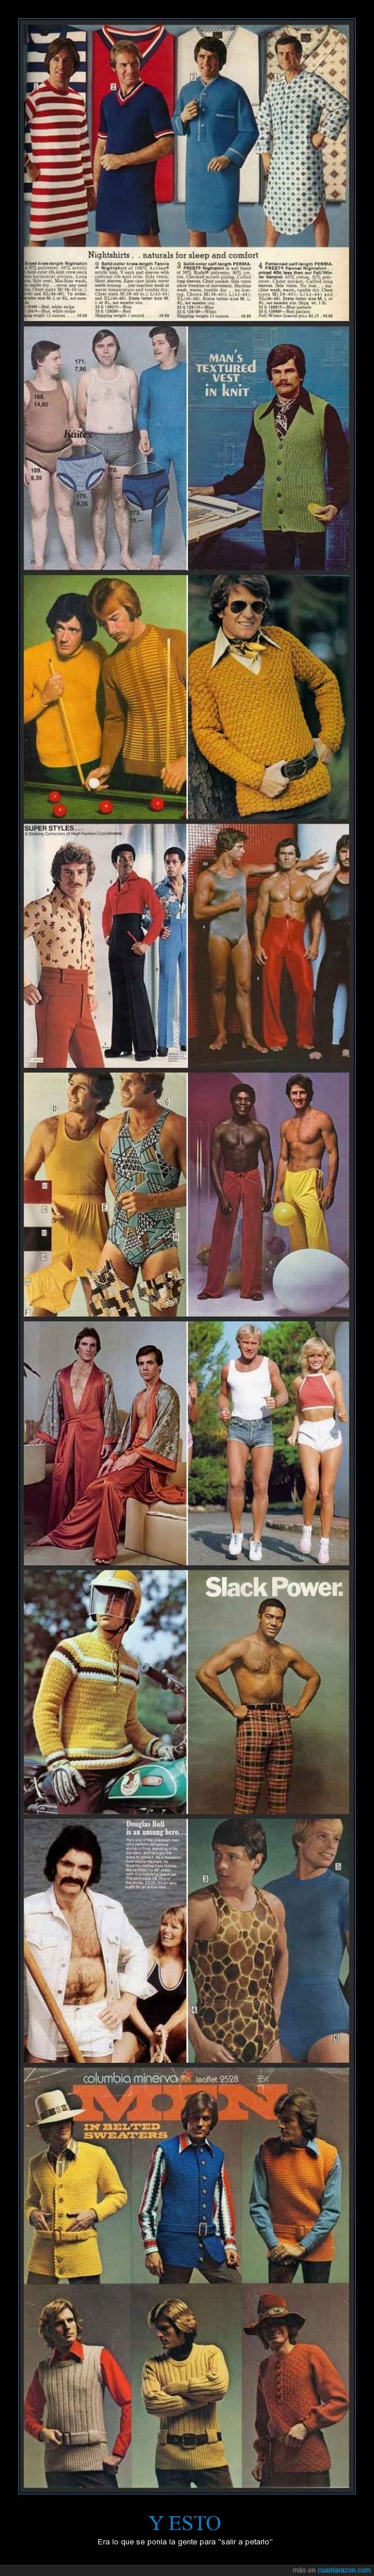 Moda,pijamas,pasado,ropa,catálogos,80's,70's,estilo,punto,ganchillo,chaleco,bañador,estilazo